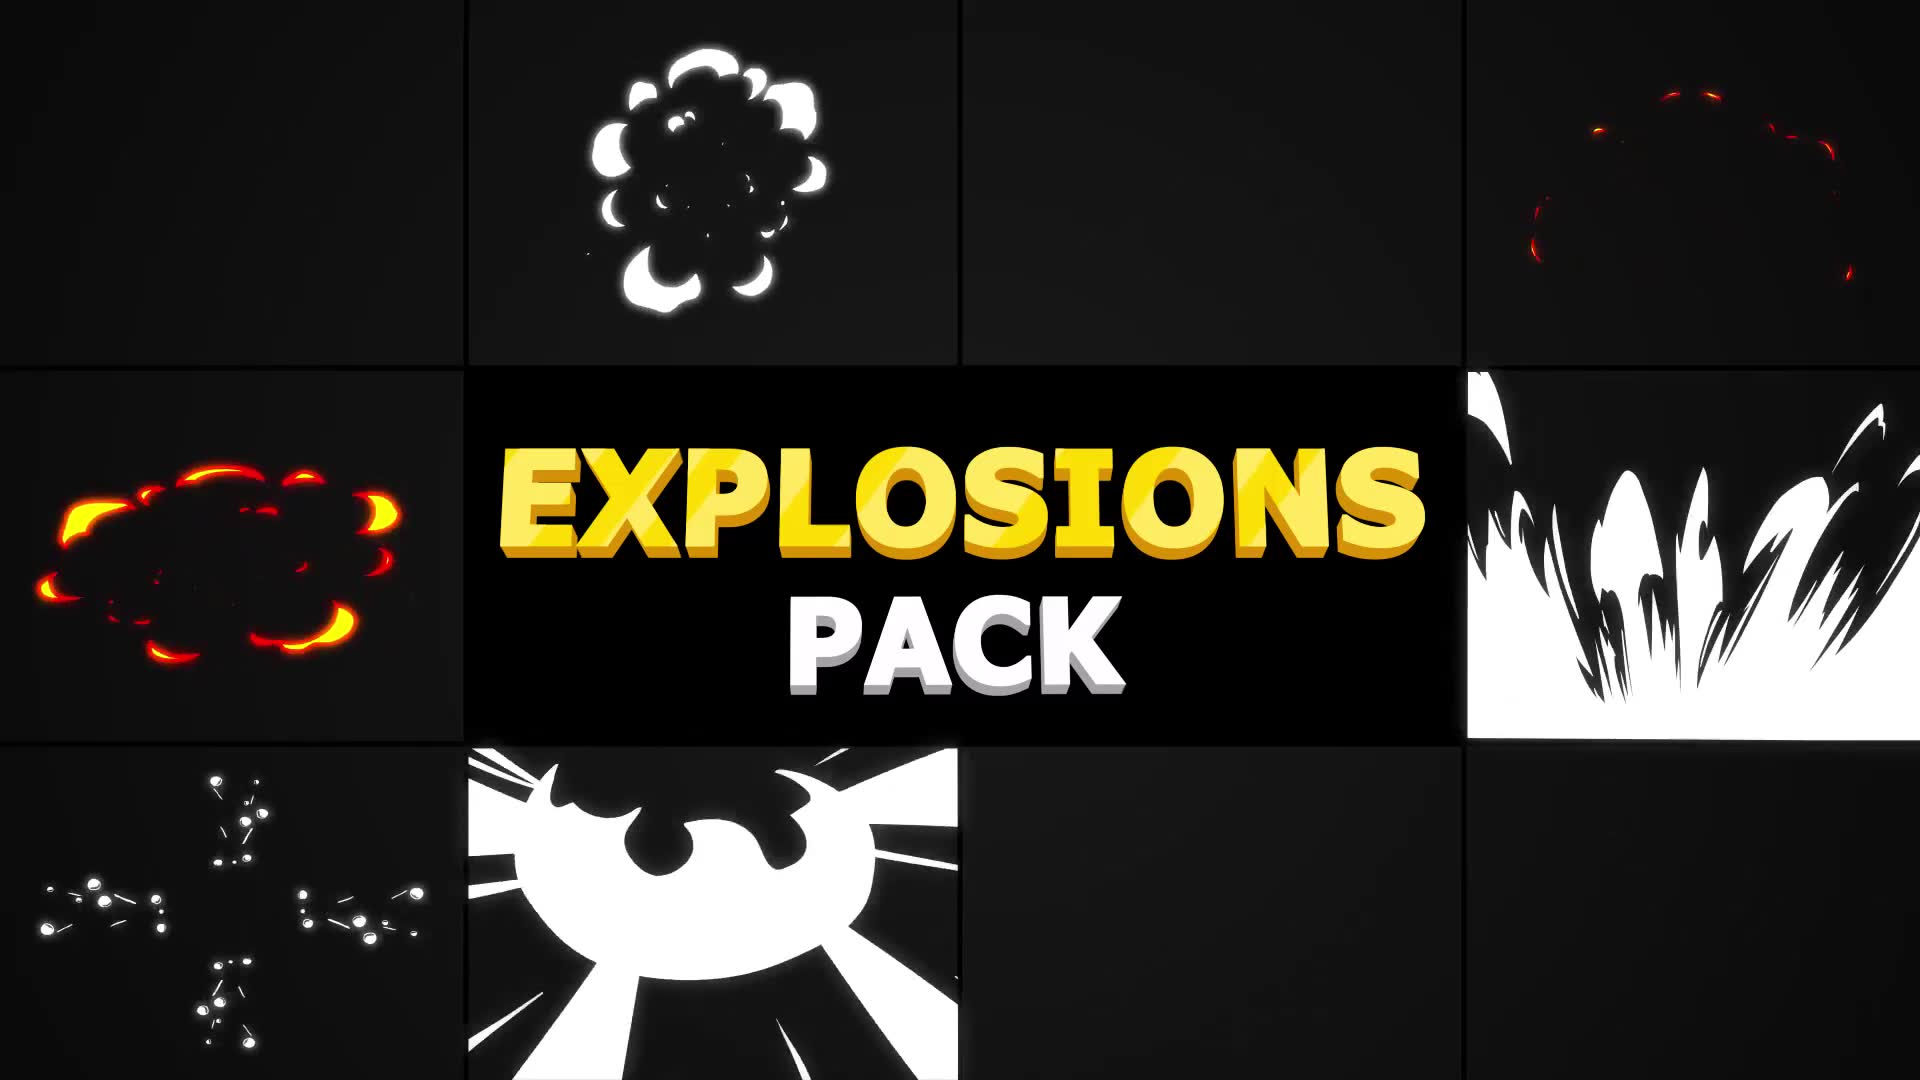 Explosions Pack | Premiere Pro MOGRT Videohive 32368437 Premiere Pro Image 2